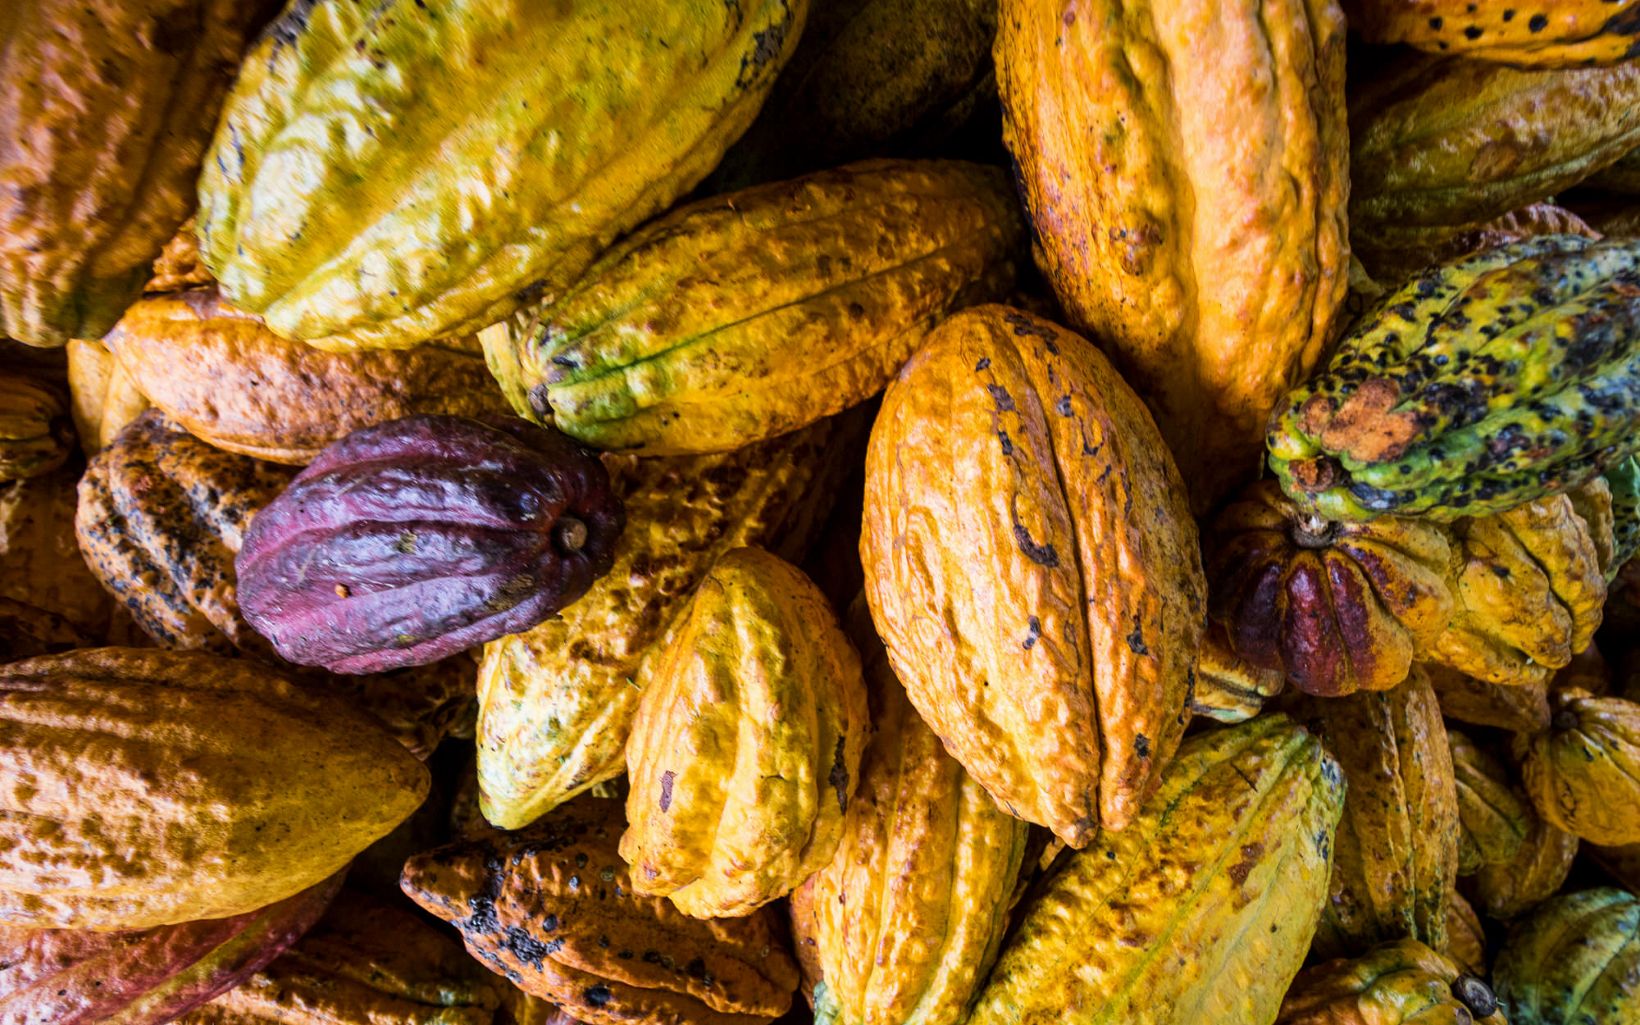 Cultivos sostenibles Productos como el cacao son alternativas viables para un desarrollo económico local arraigado en los paisajes amazónicos. © TNC Colombia